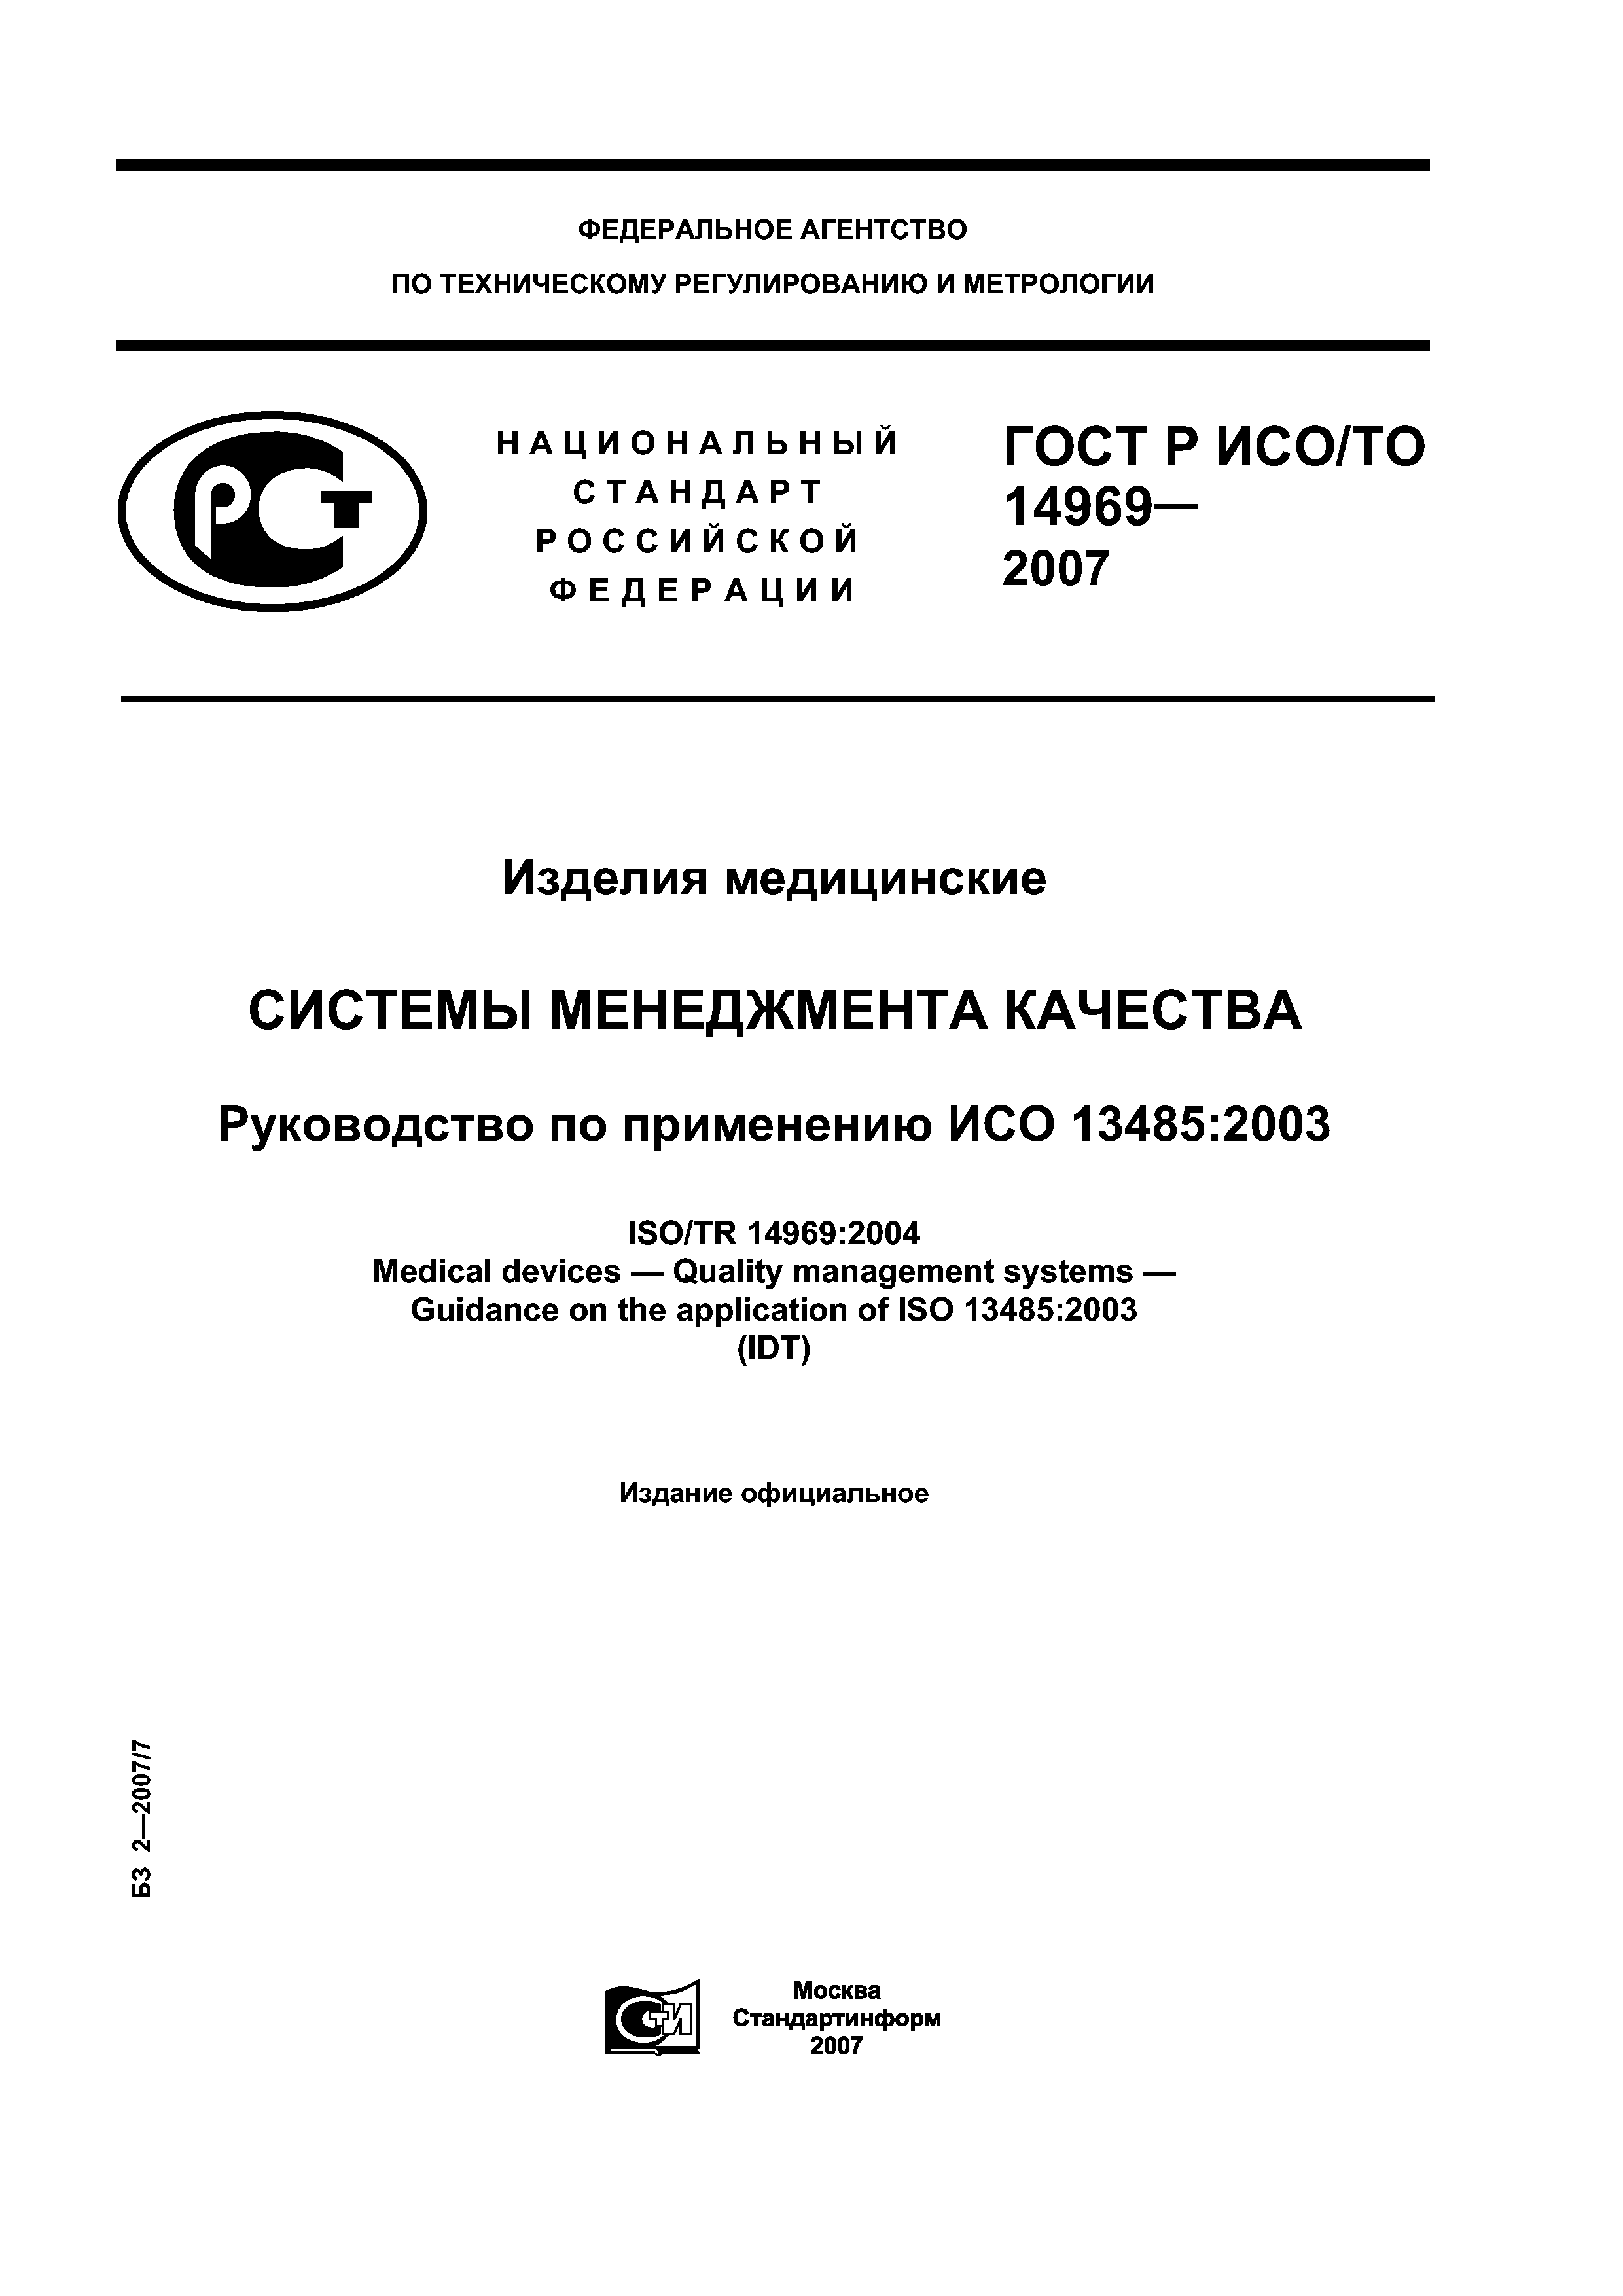 ГОСТ Р ИСО/ТО 14969-2007